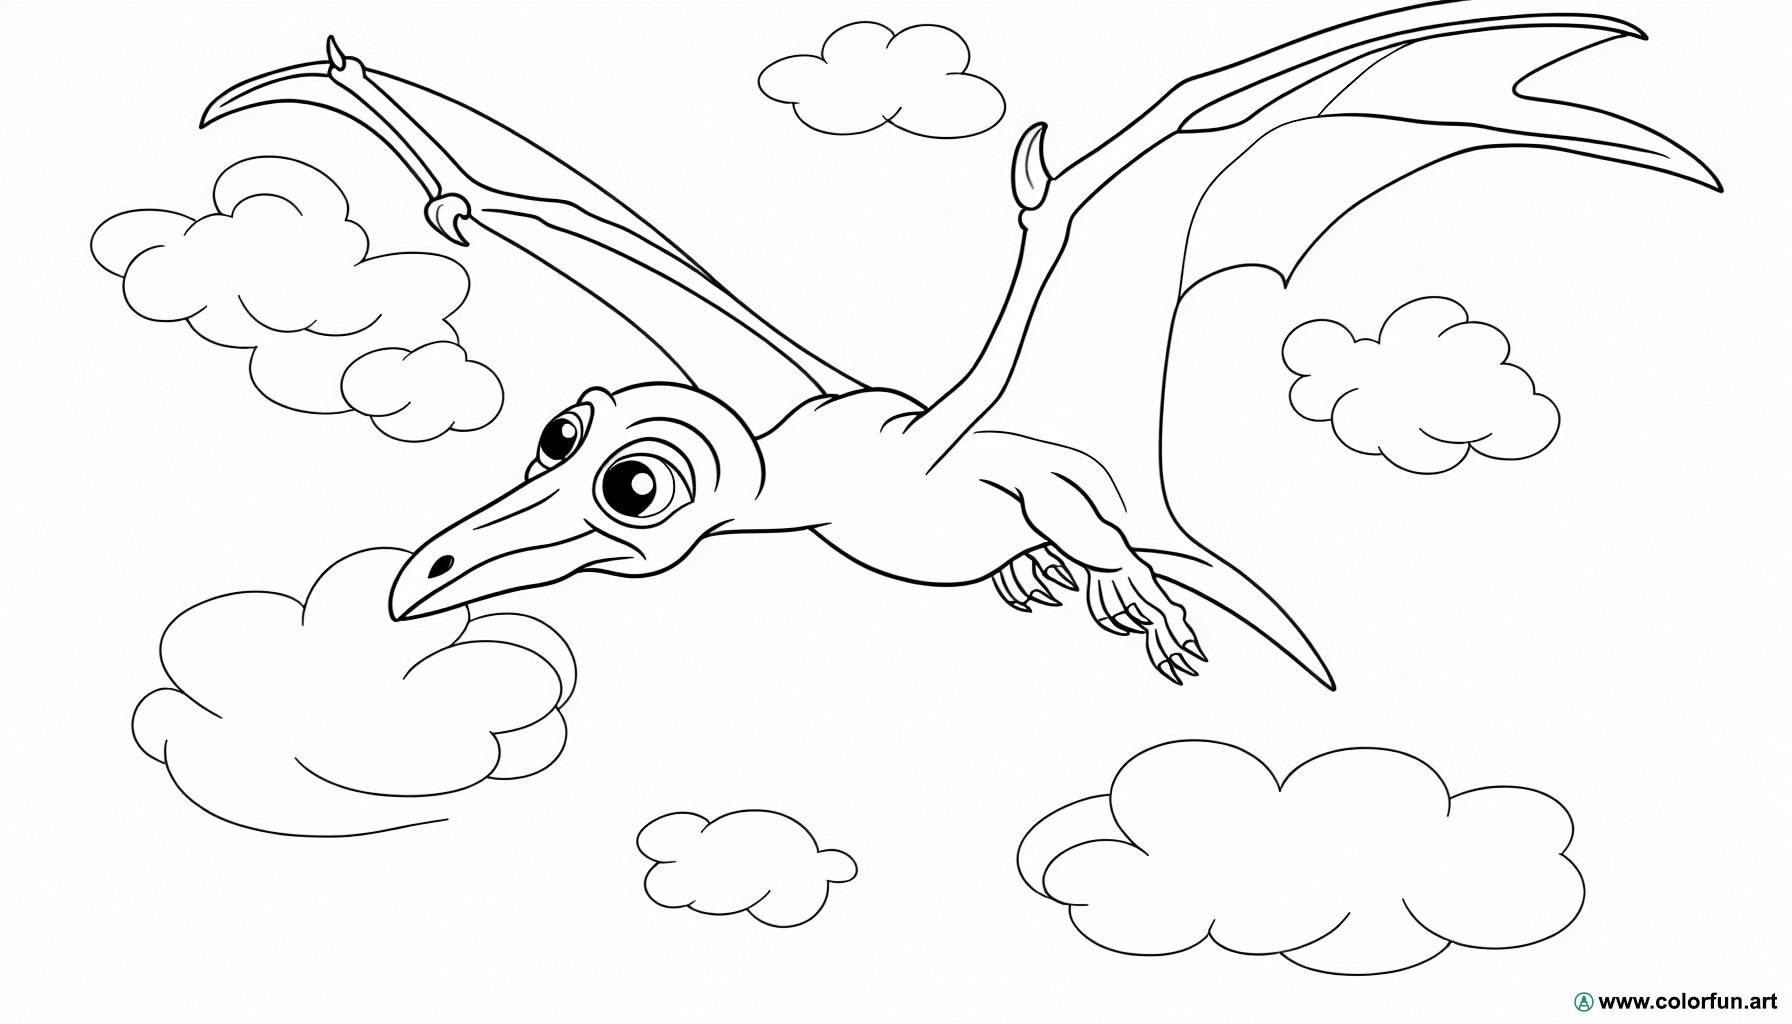 dibujo para colorear de un pterodáctilo volando